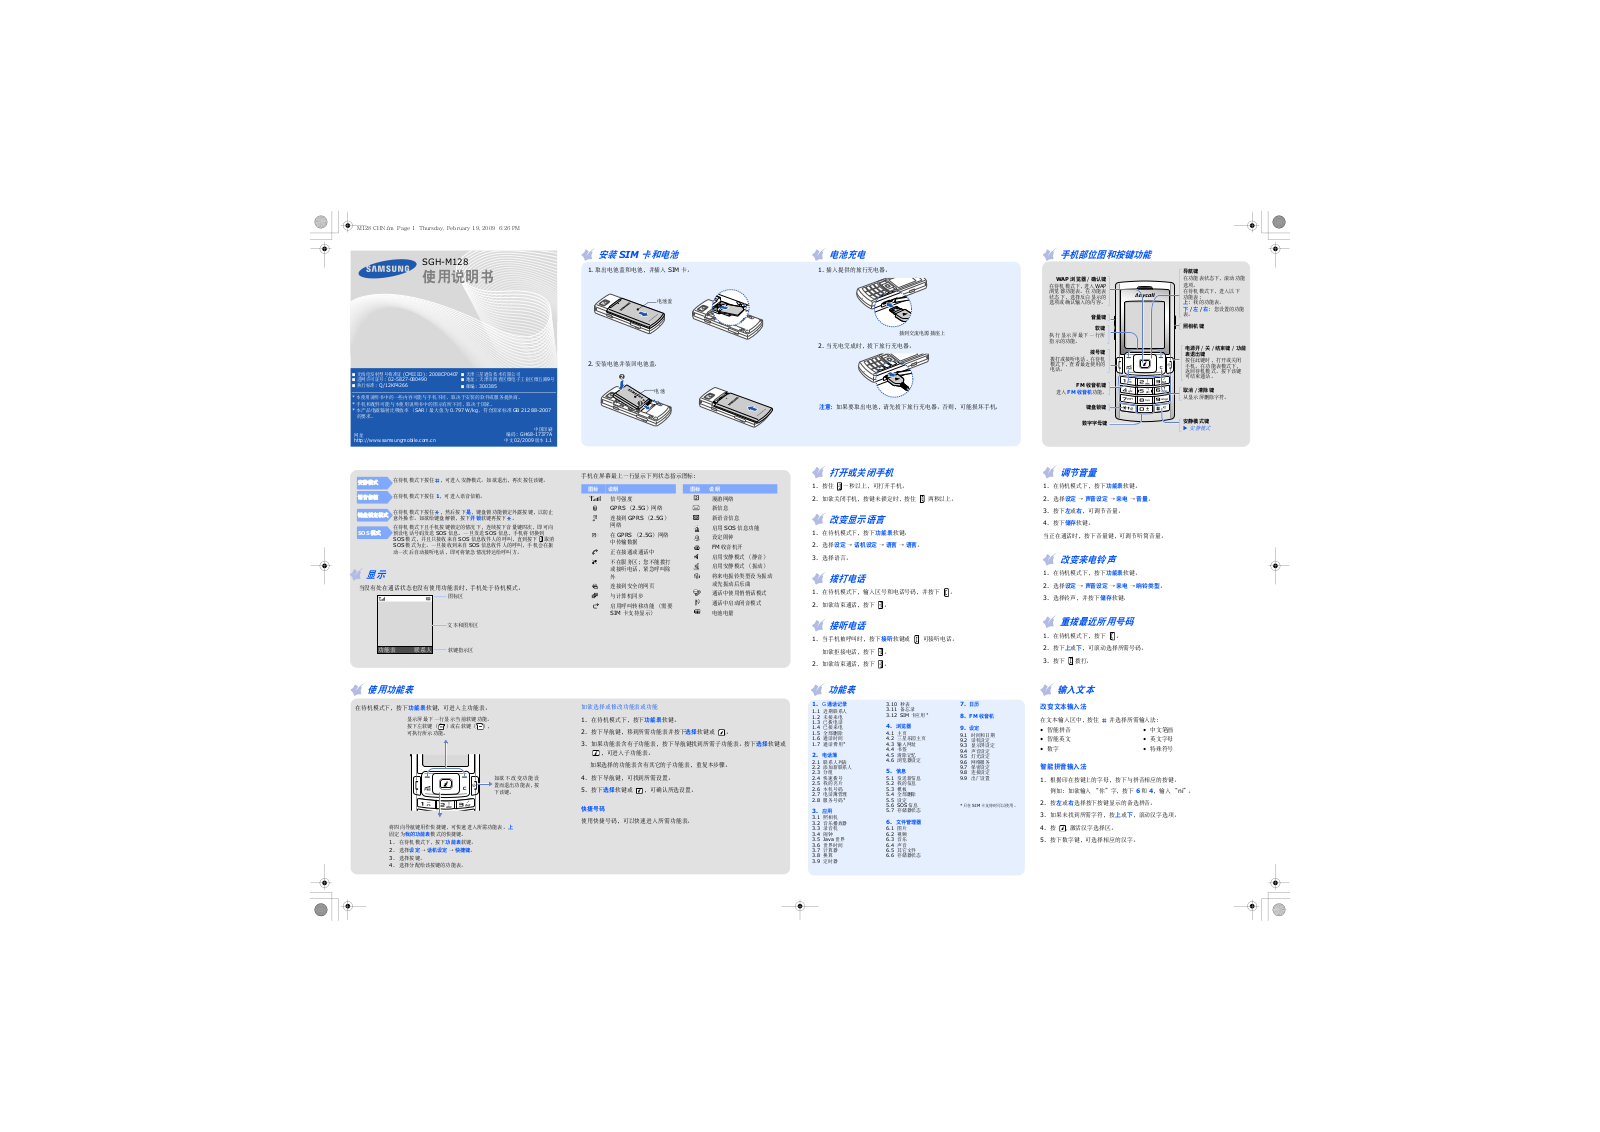 SAMSUNG SGH-M128 User Manual